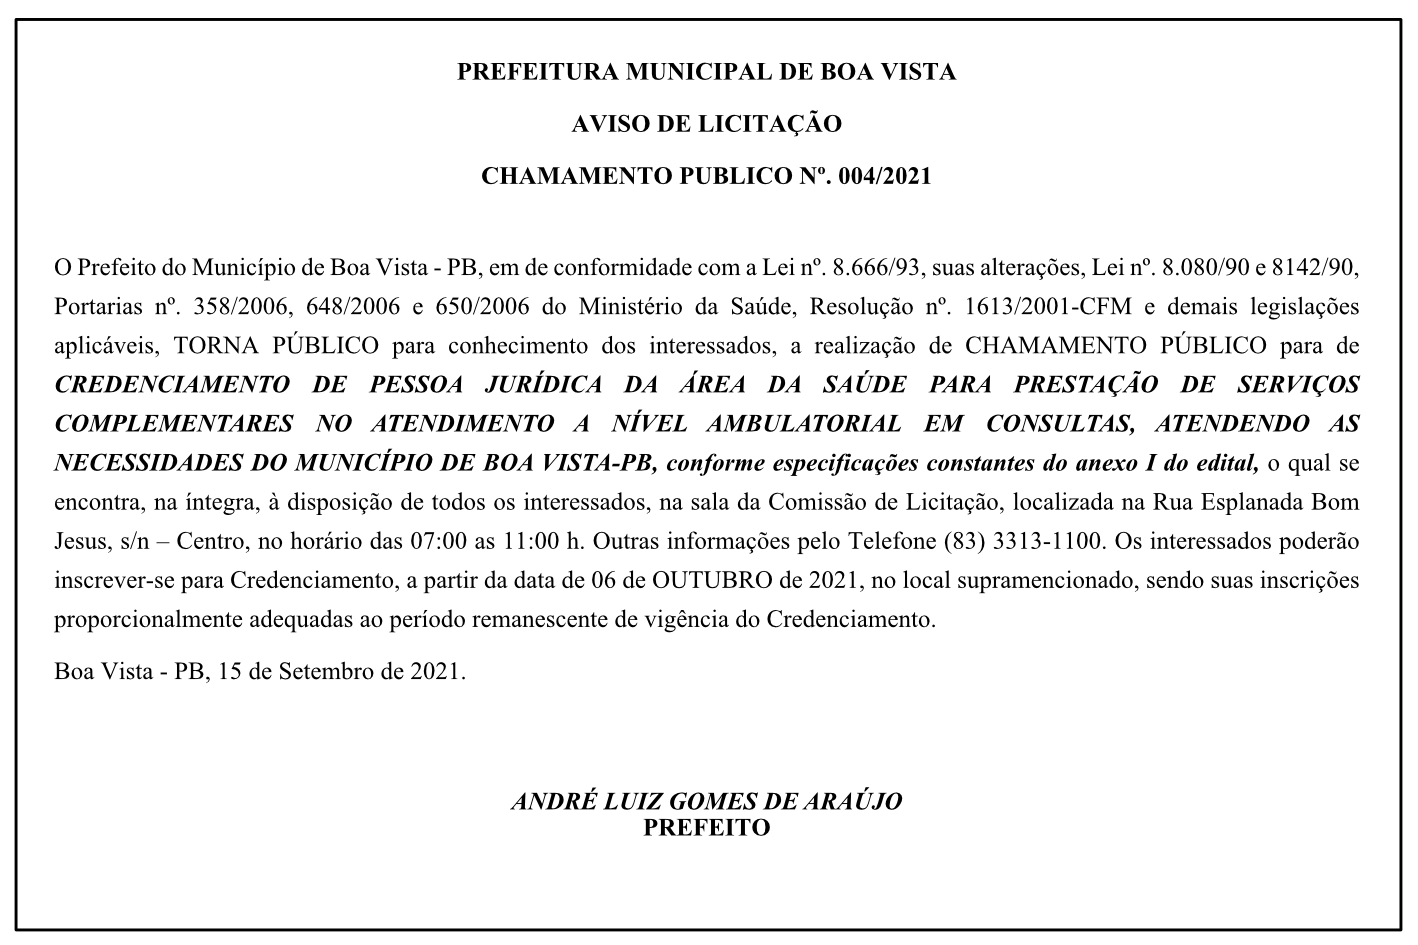 PREFEITURA MUNICIPAL DE BOA VISTA – AVISO DE LICITAÇÃO – CHAMAMENTO PUBLICO Nº. 004/2021